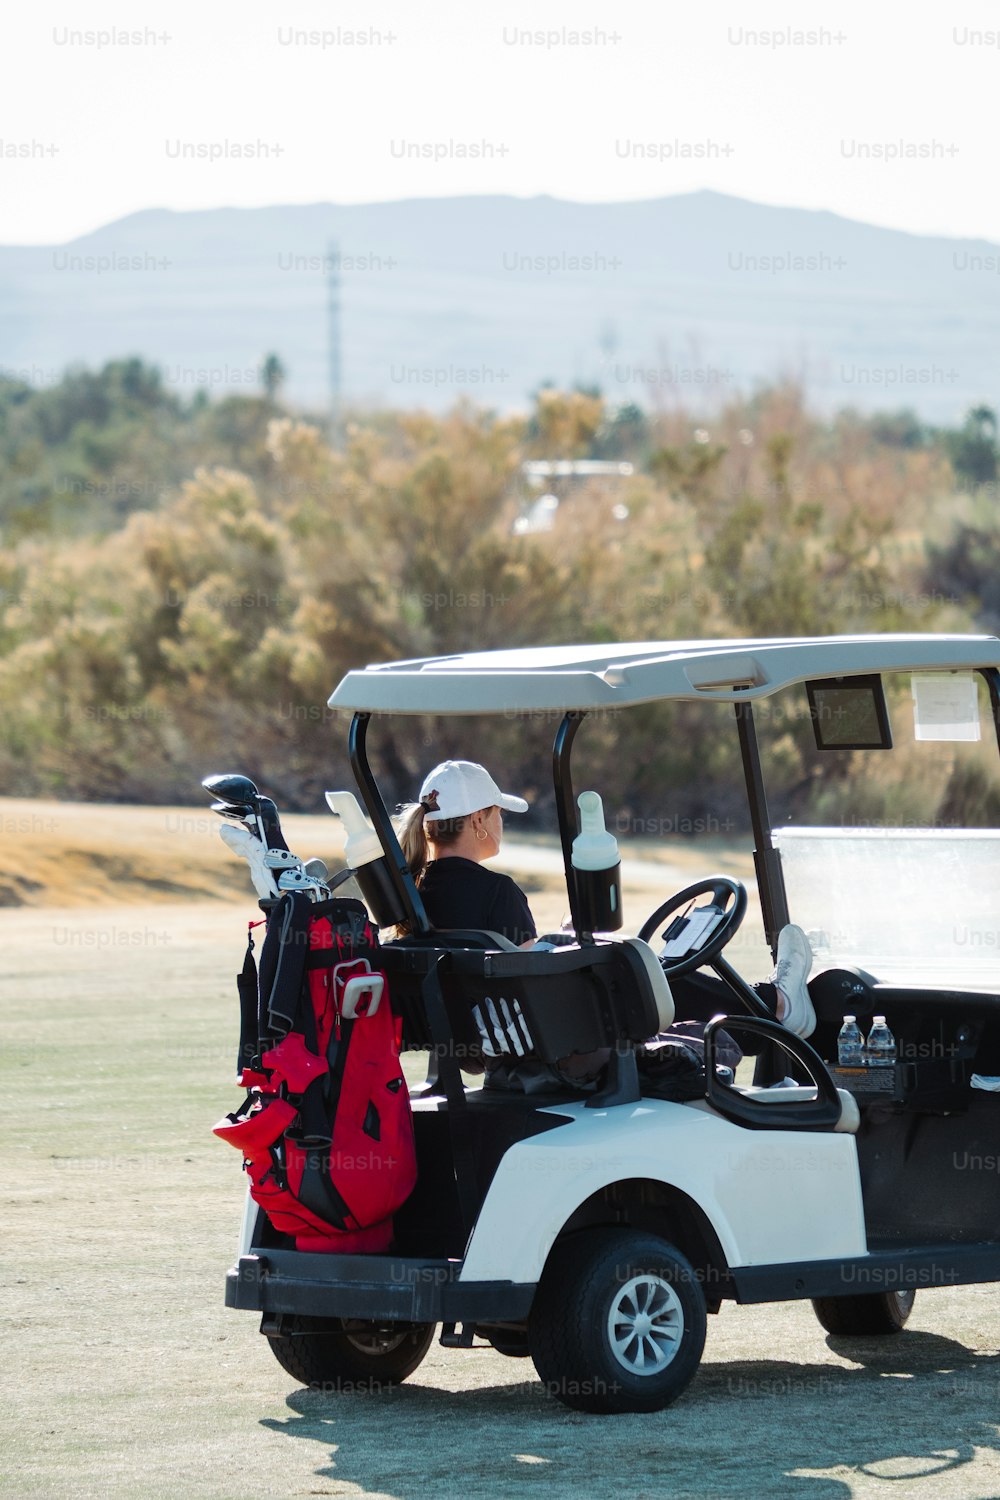 Un hombre conduciendo un carrito de golf con una bolsa de golf en la espalda